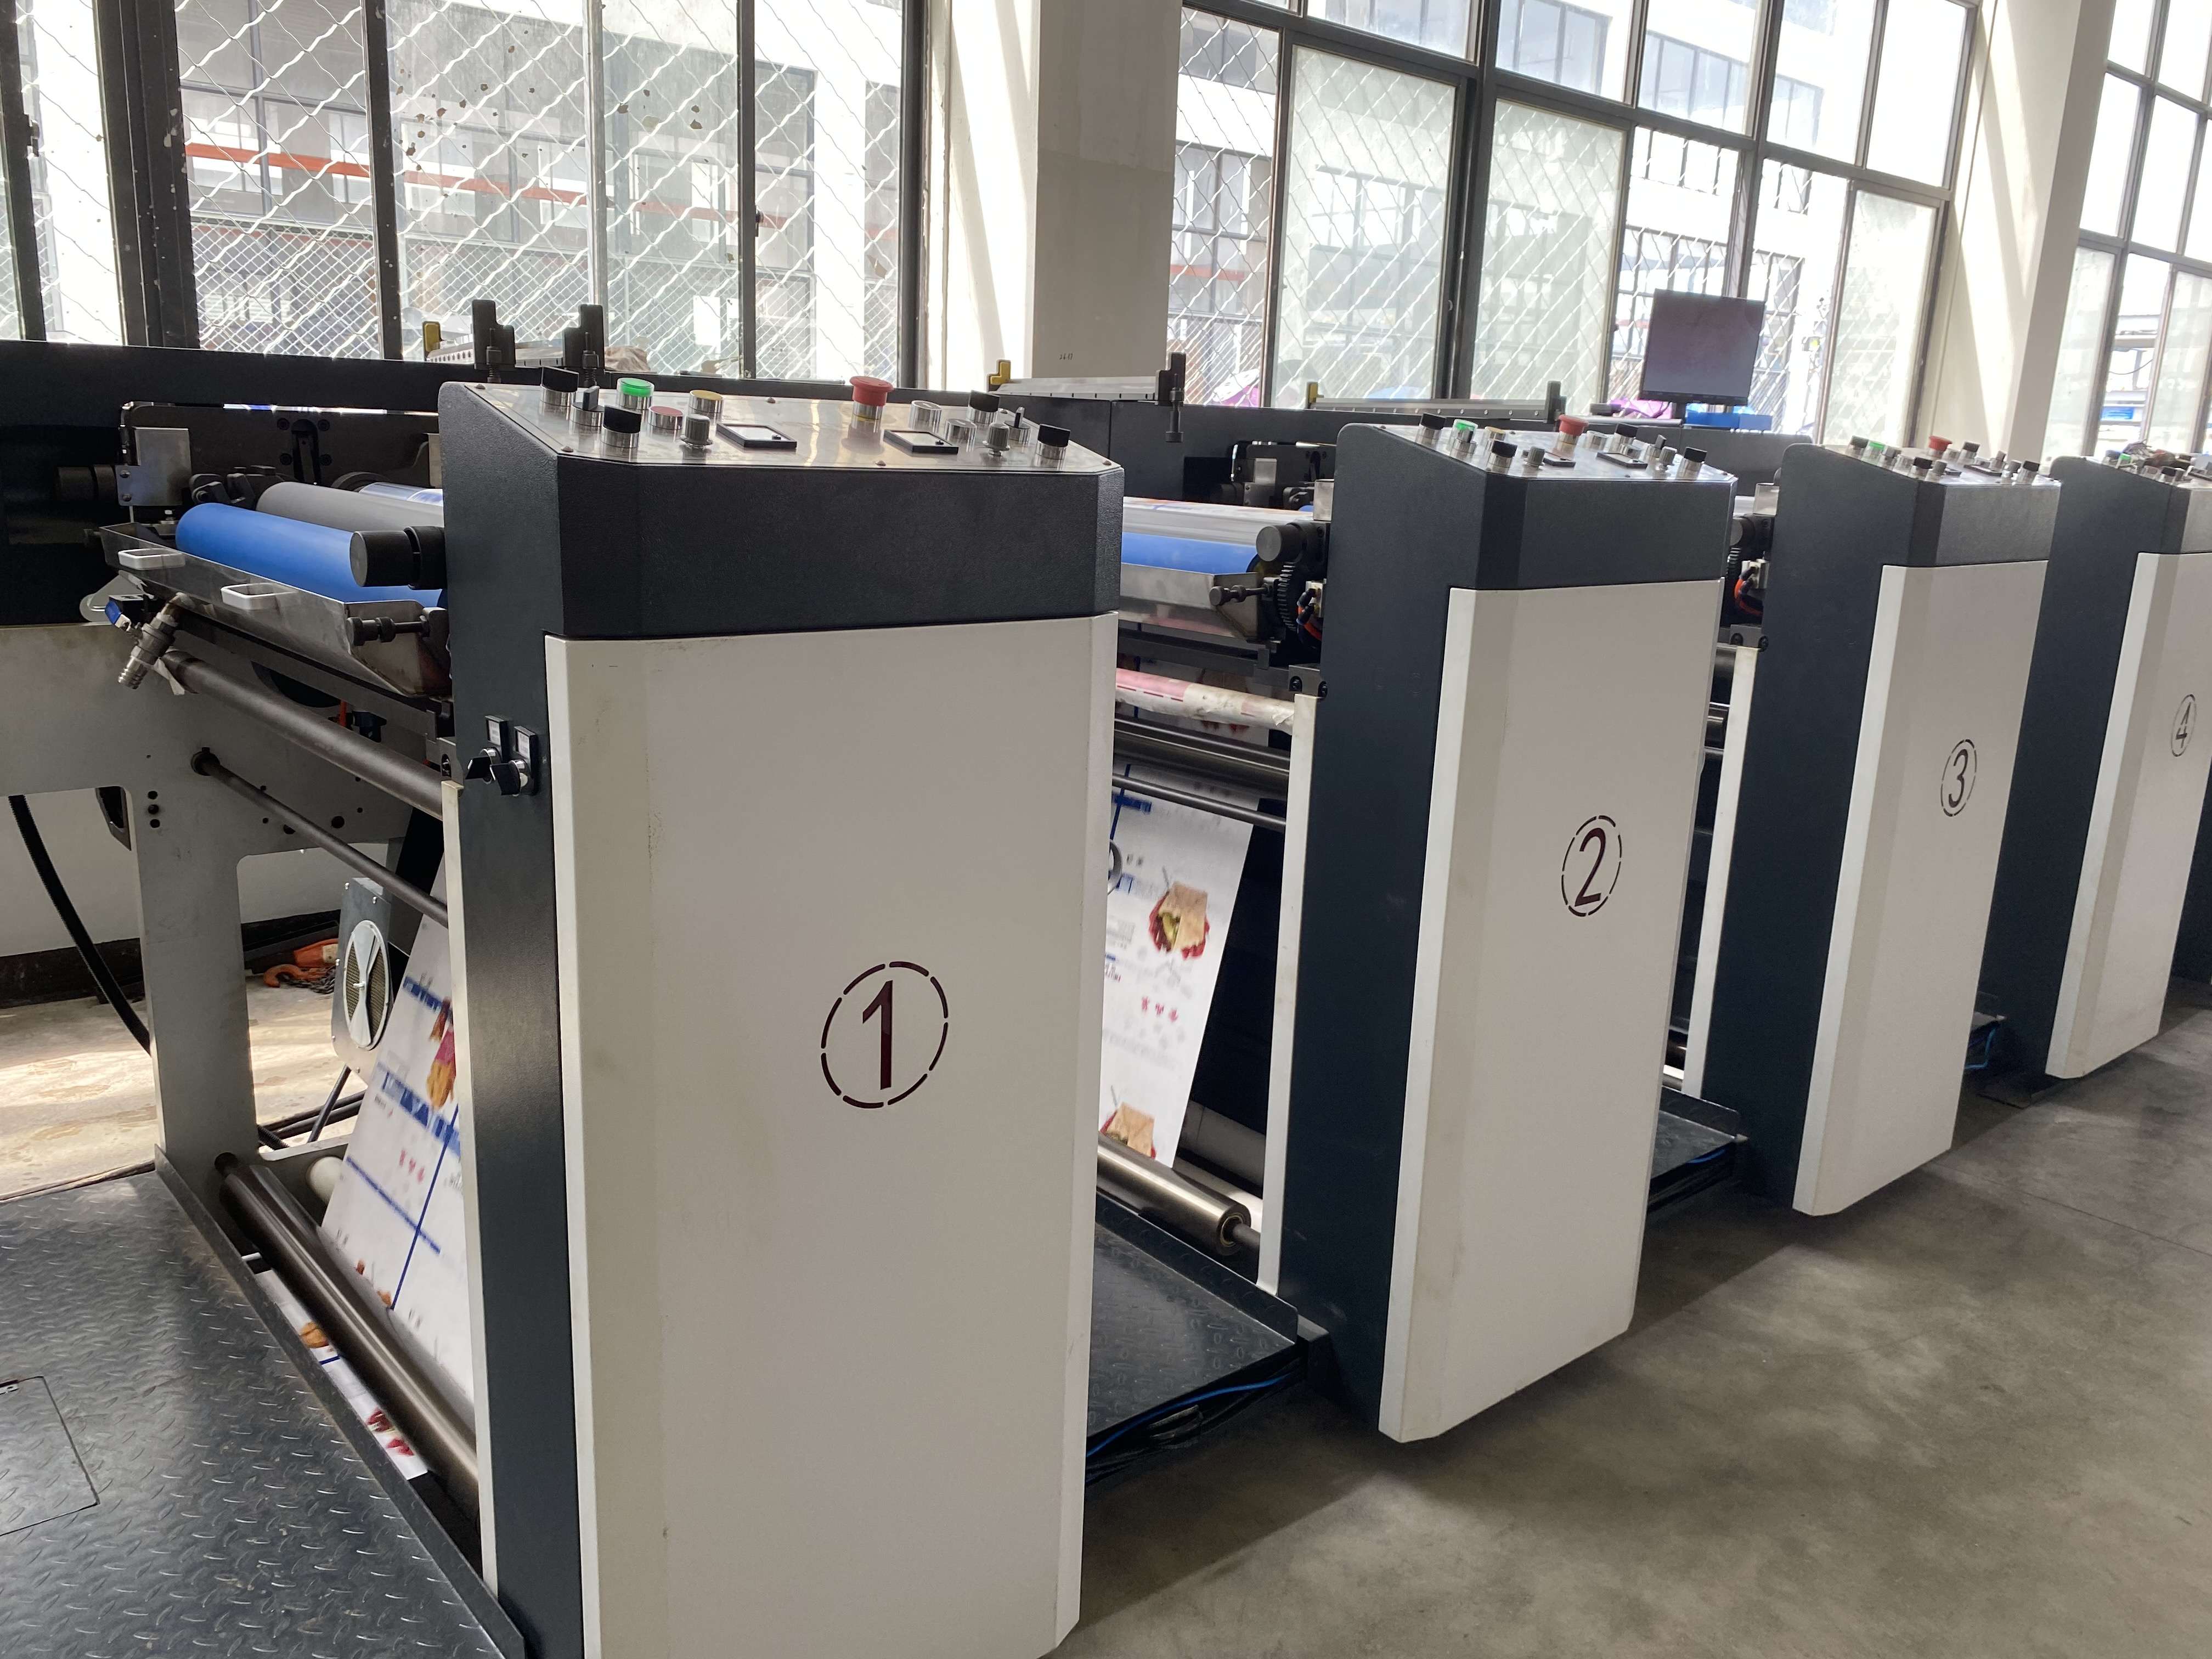 Máquina de impressão flexográfica de saco de papel HRY-1000-6 colorido